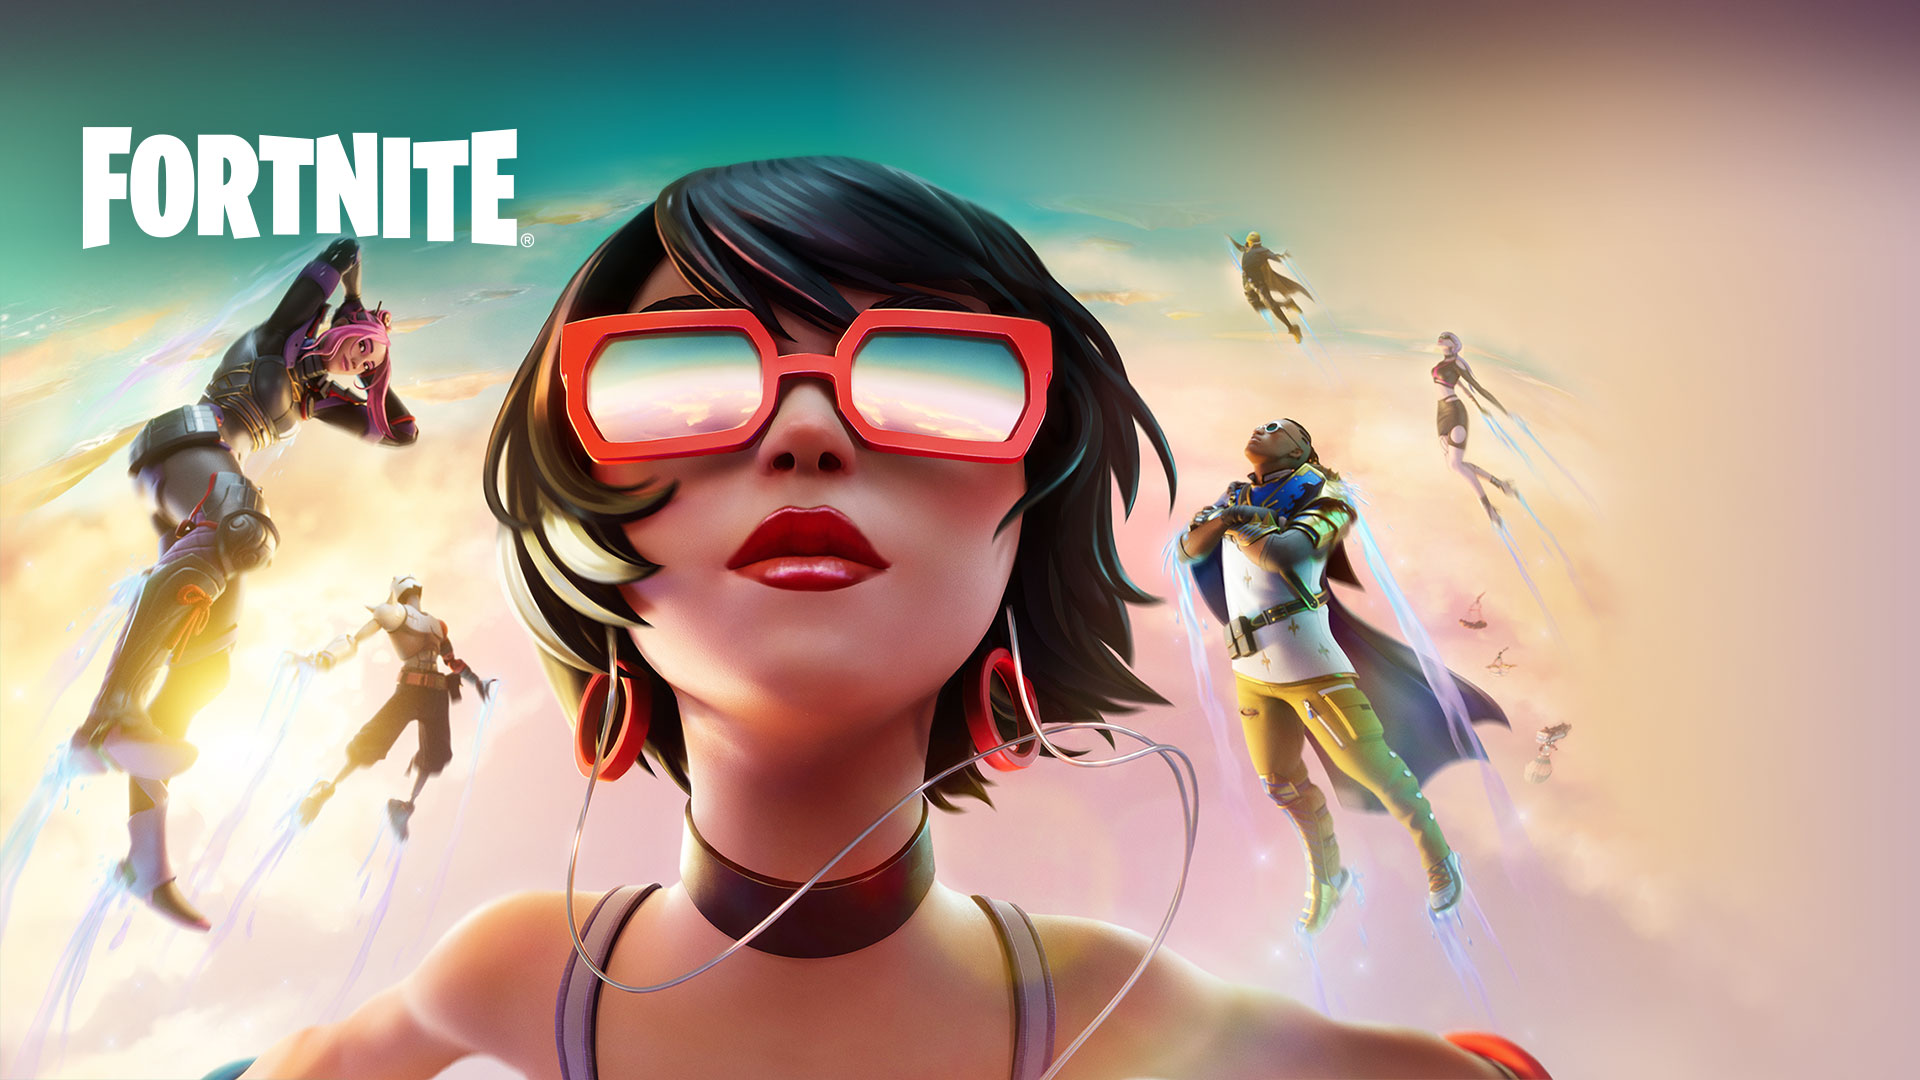 Fortnite, En pige med røde solbriller svæver i skyerne med andre karakterer mod en pastelfarvet himmel.